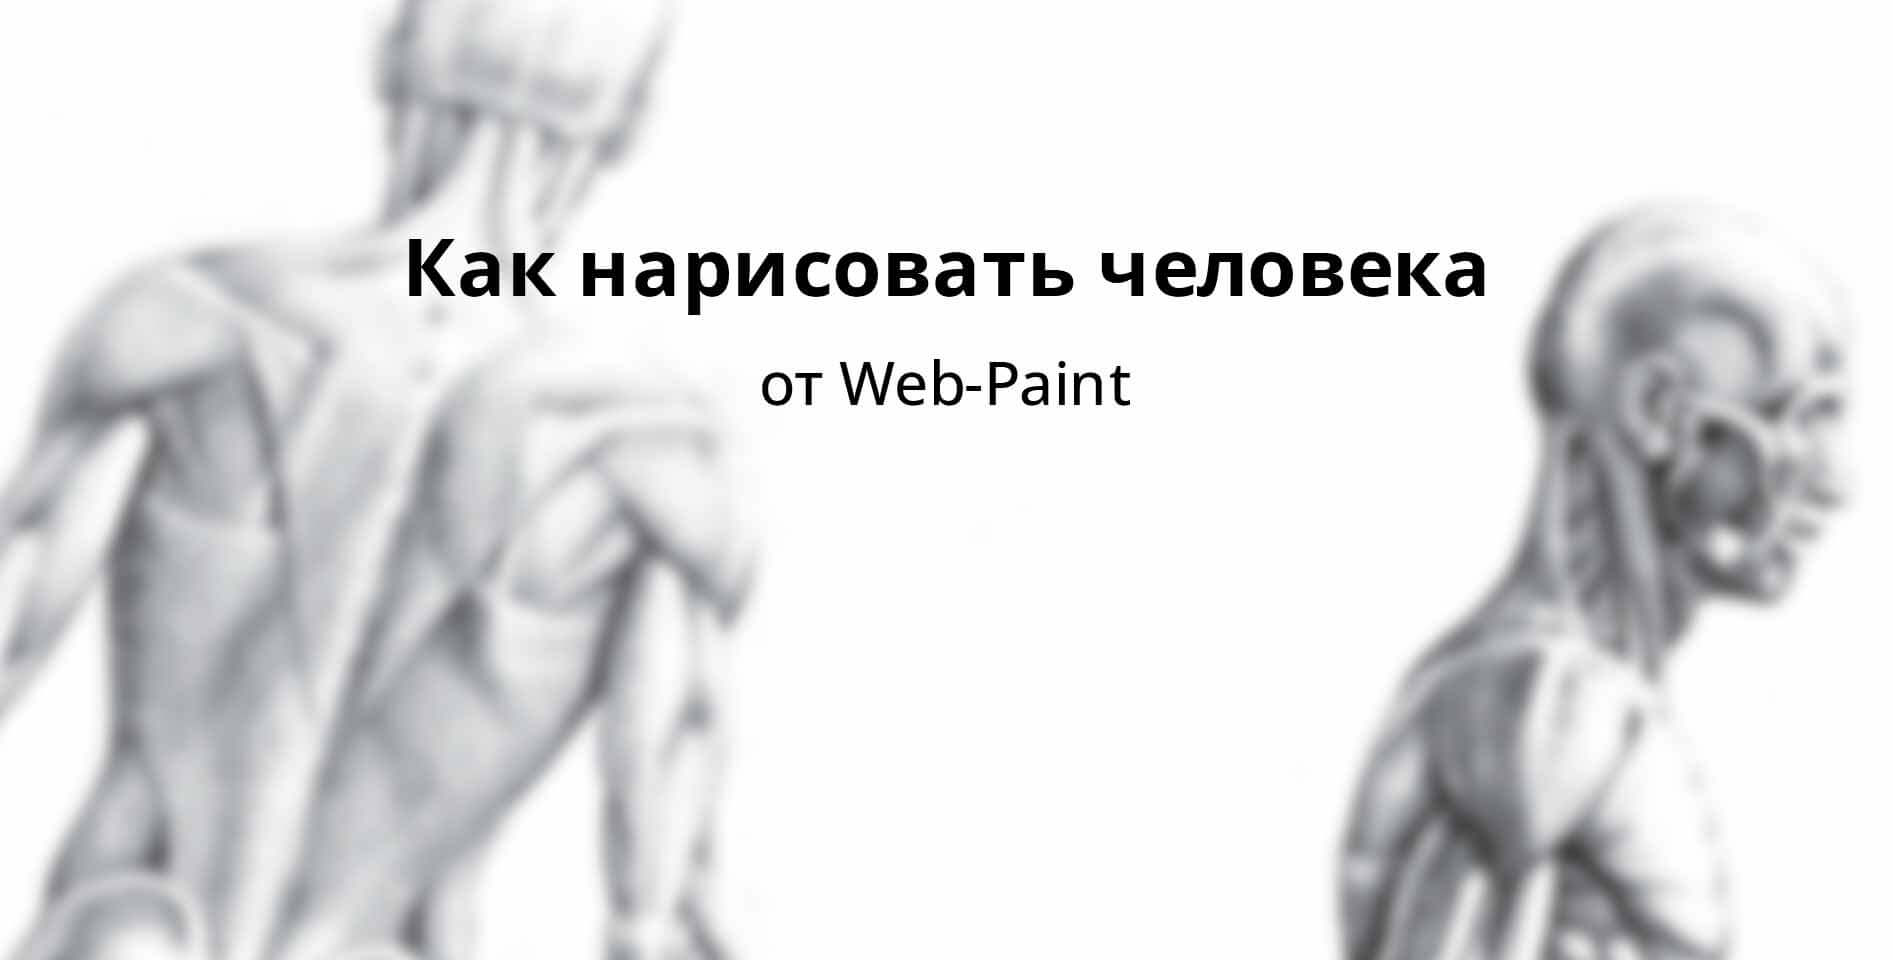 Web-Paint — Как нарисовать человека